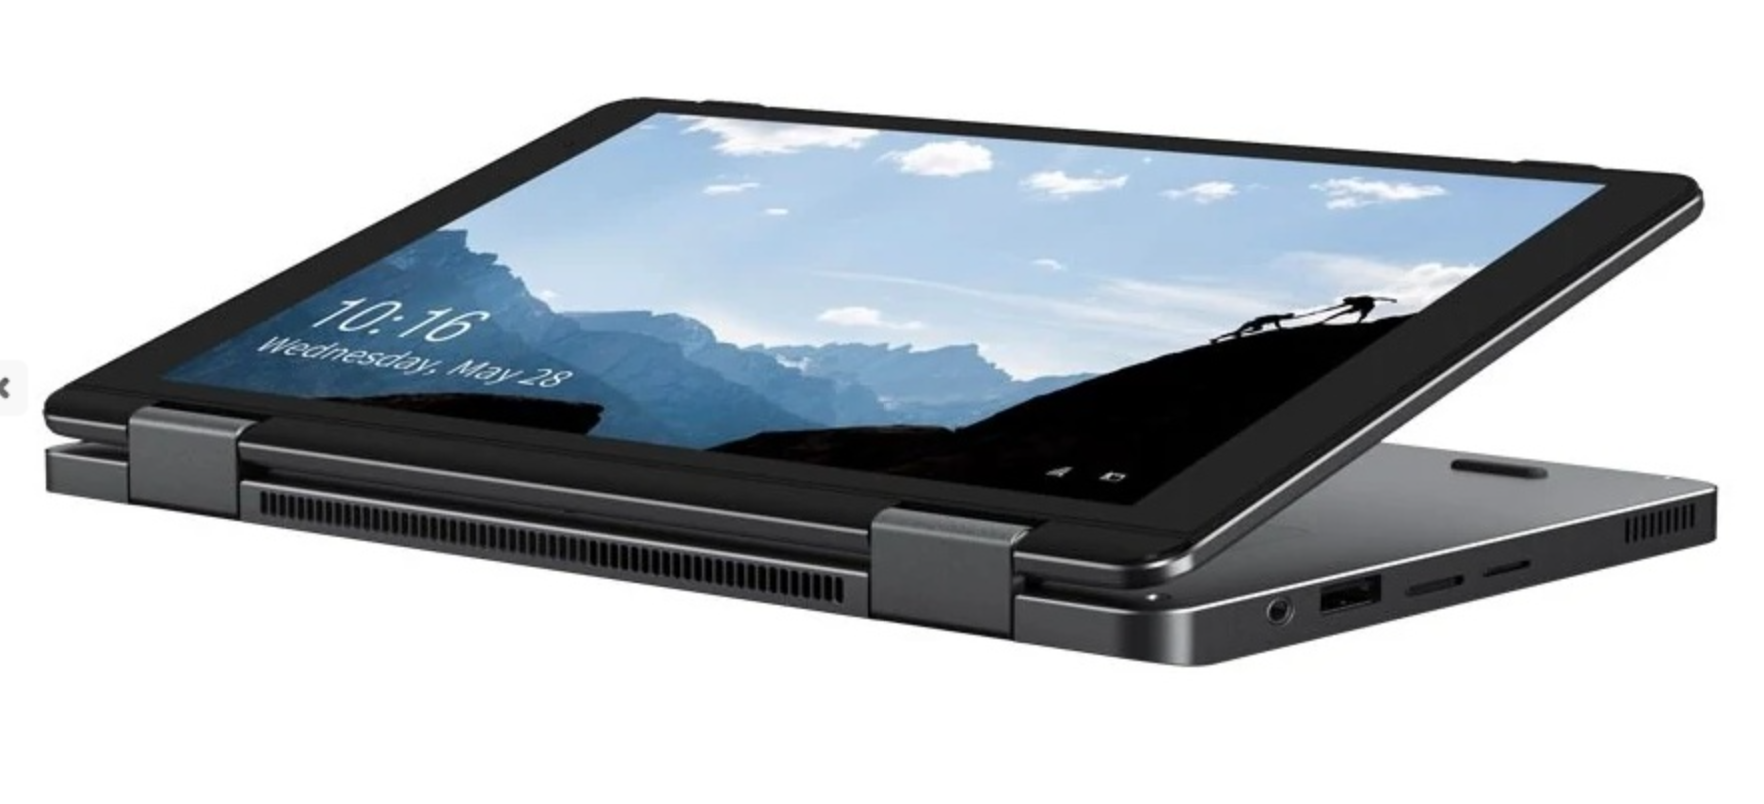 Chuwi MiniBook Yoga, an 8-inch 3-in-1 PC with Celeron J4125 